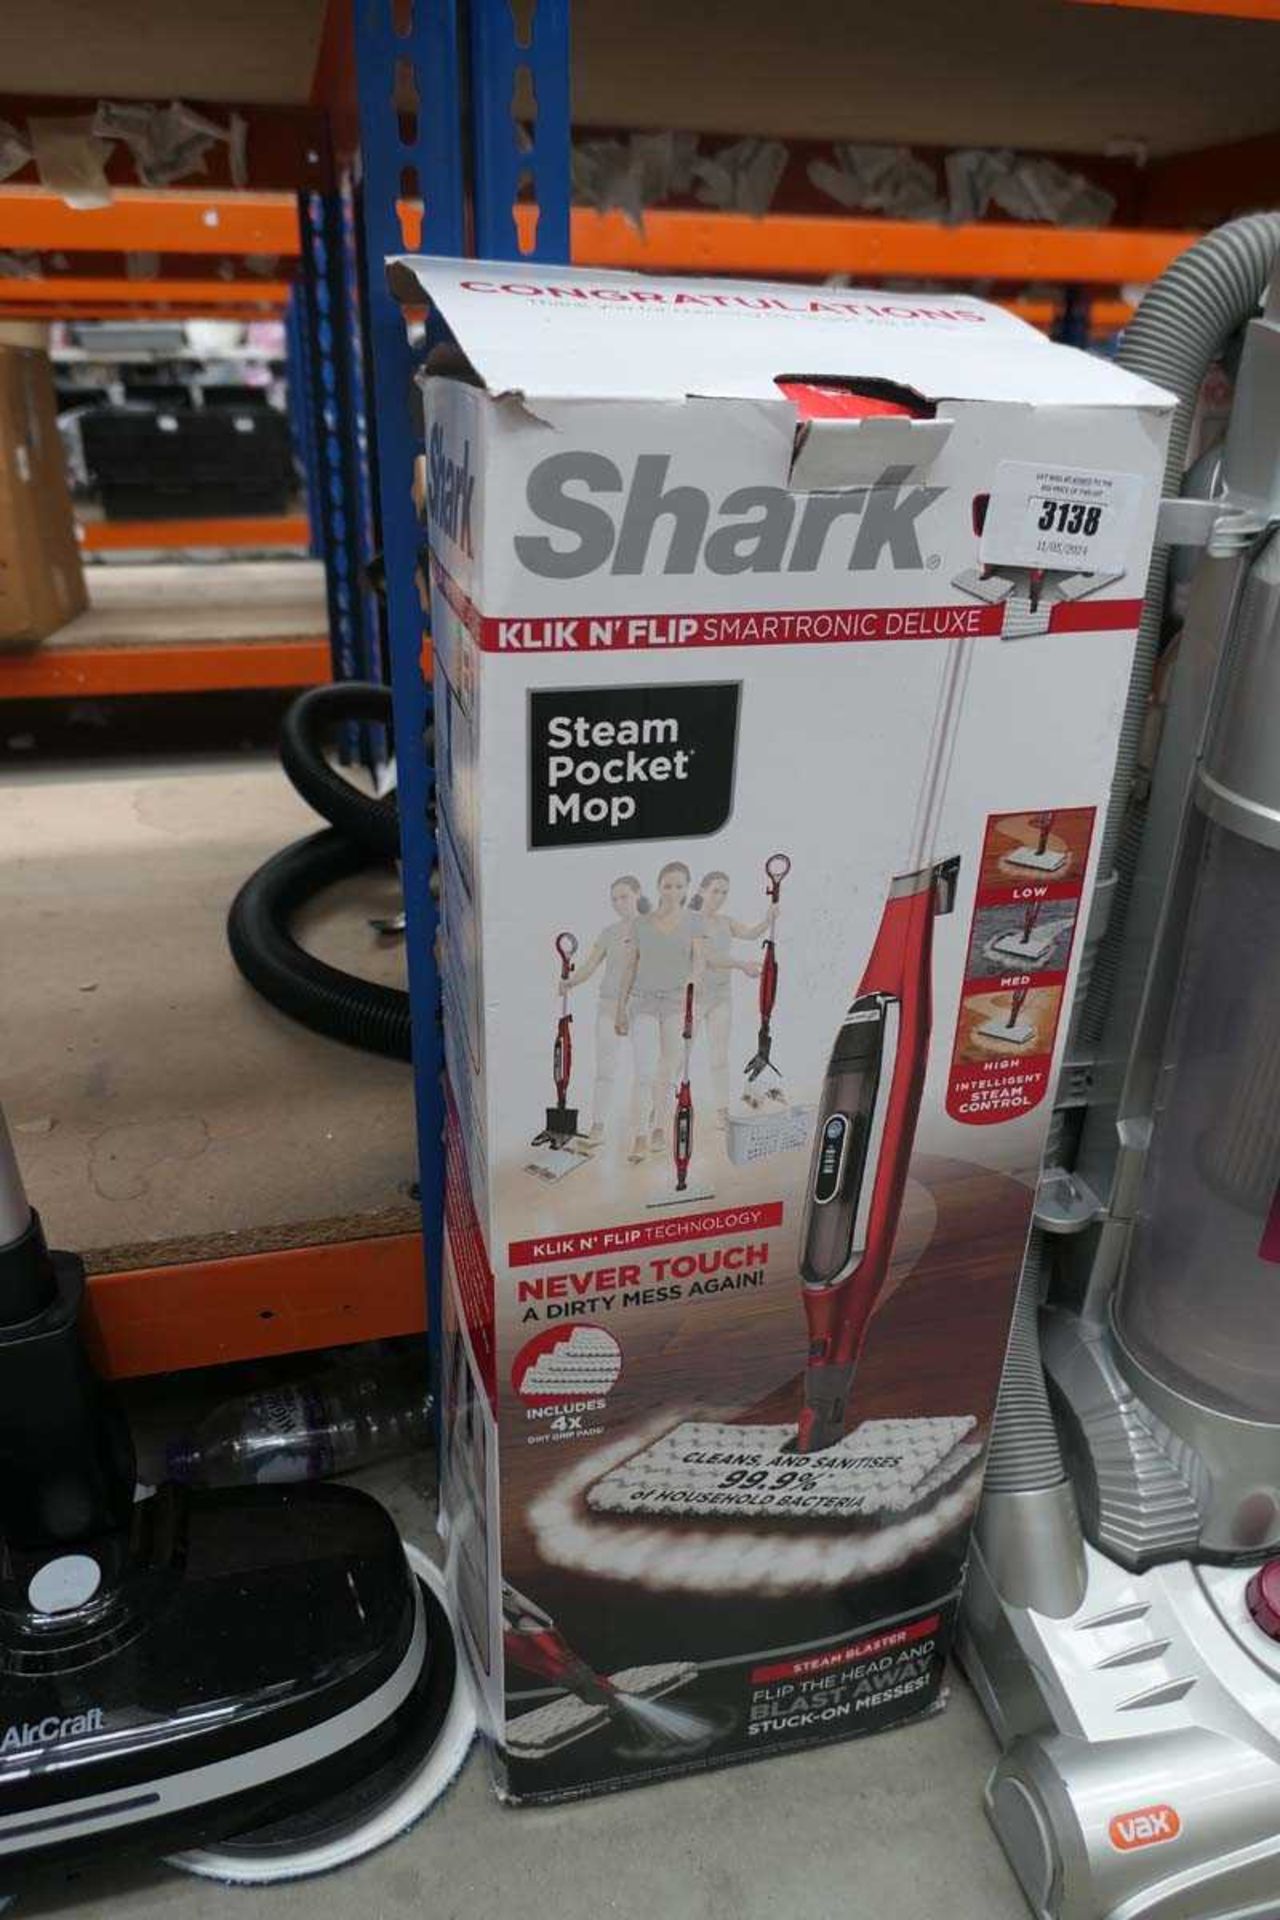 Upright Shark steam mop